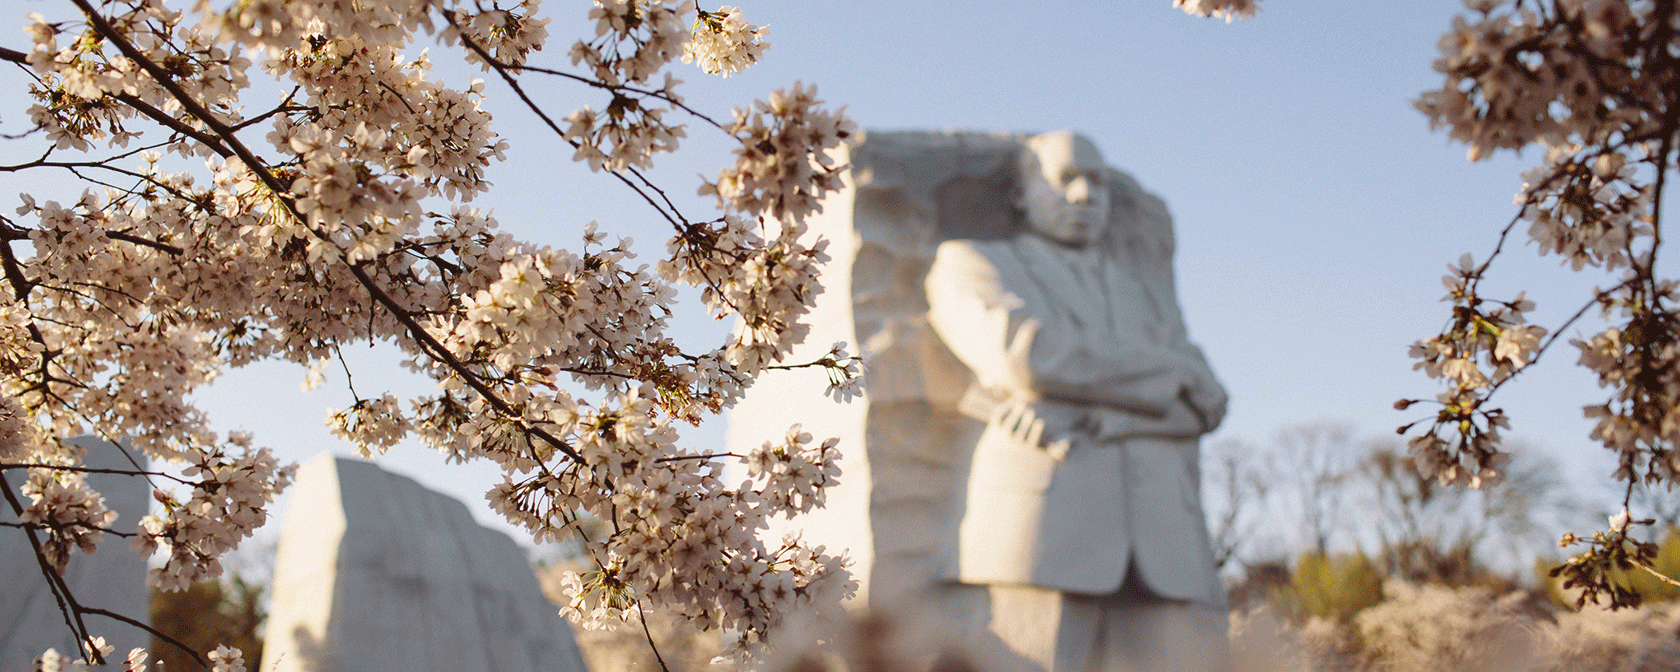 MLK Jr Memorial & Cherry Blossoms at Springtime